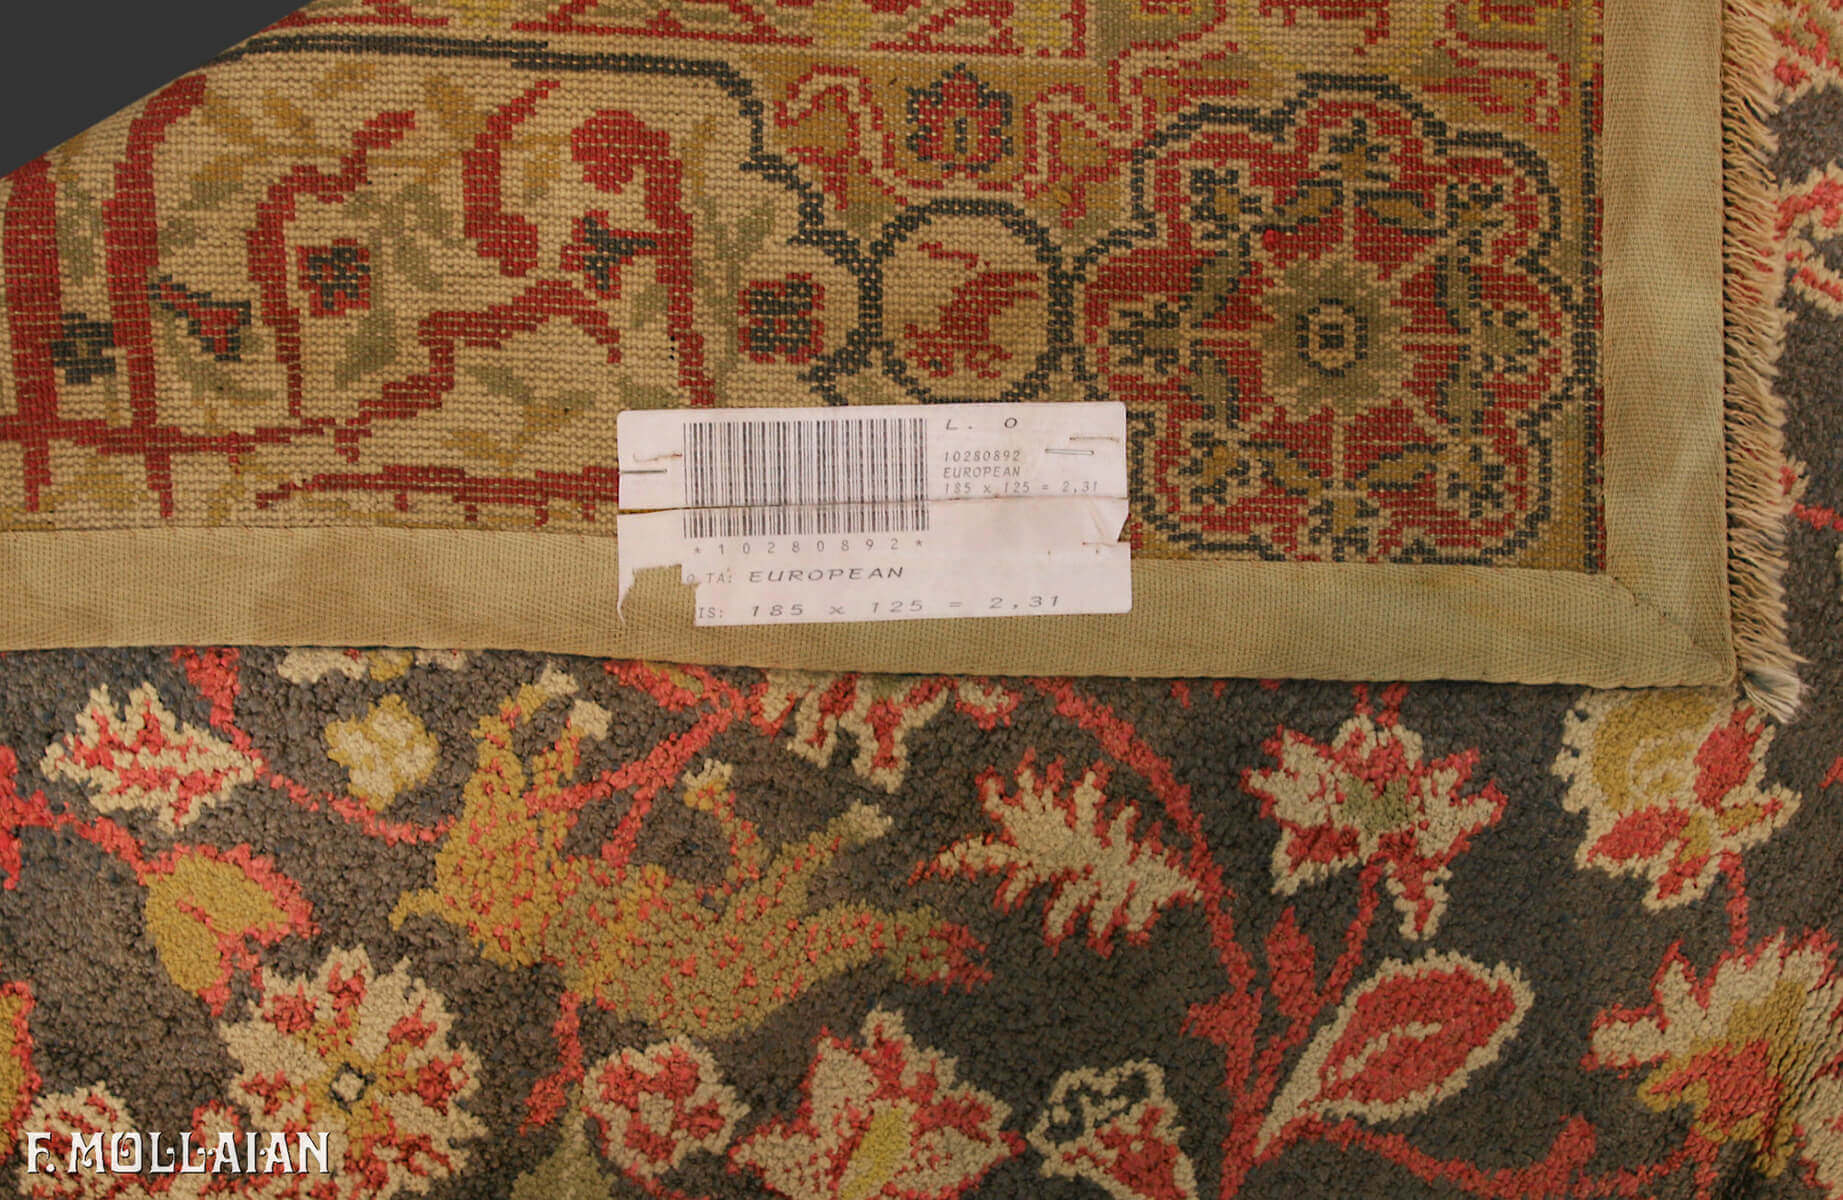 Teppich Semi-Antiker Europäischer Seide n°:10280892